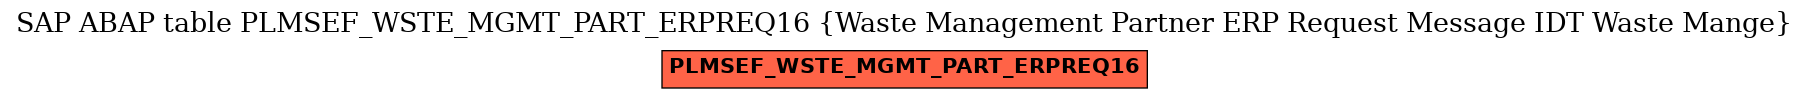 E-R Diagram for table PLMSEF_WSTE_MGMT_PART_ERPREQ16 (Waste Management Partner ERP Request Message IDT Waste Mange)